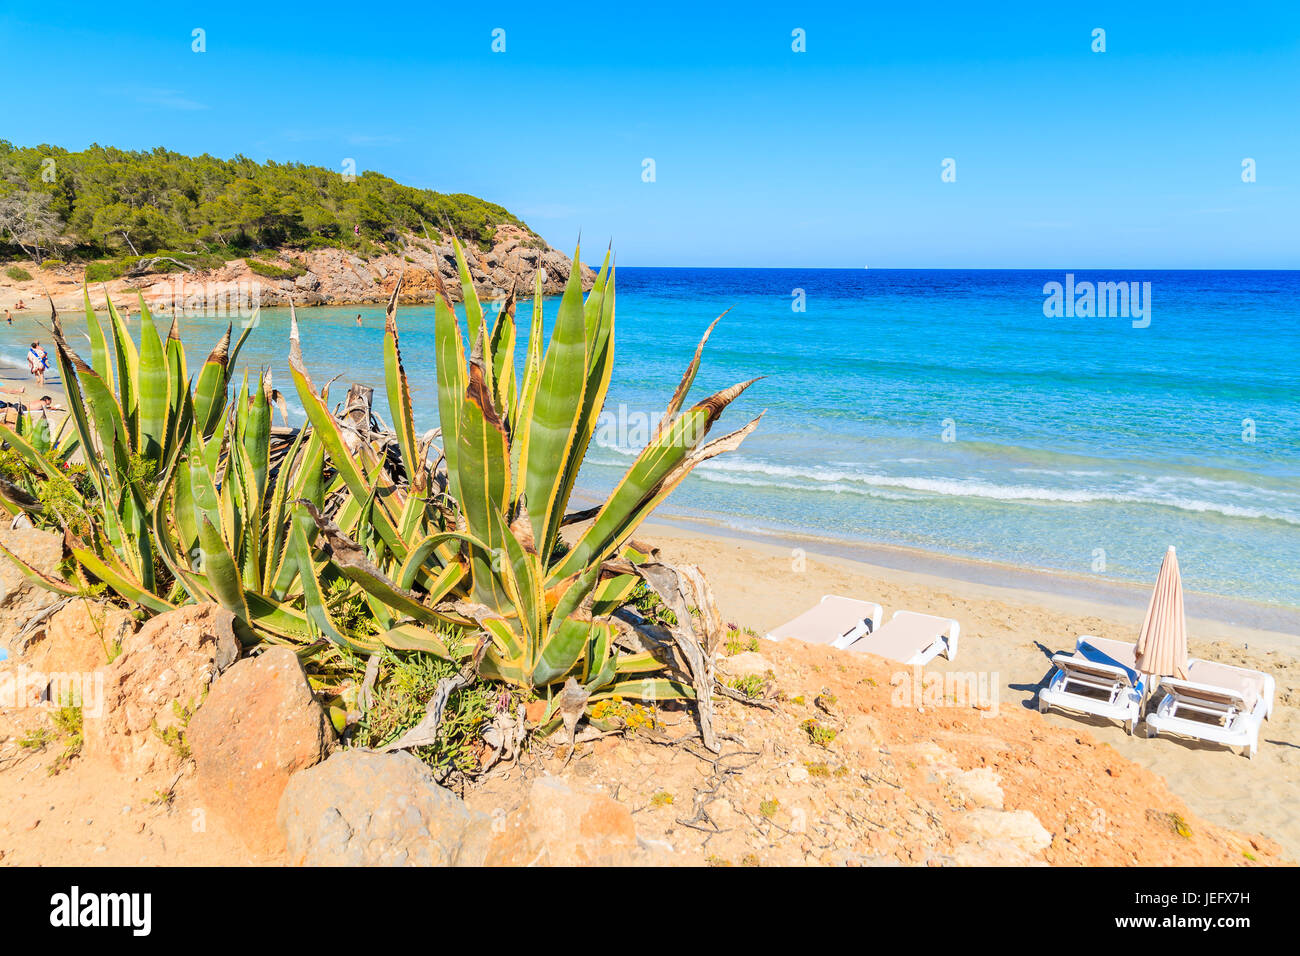 Vue de la plage de Cala Nova aux beaux jours de l'été, l'île d'Ibiza, Espagne Banque D'Images